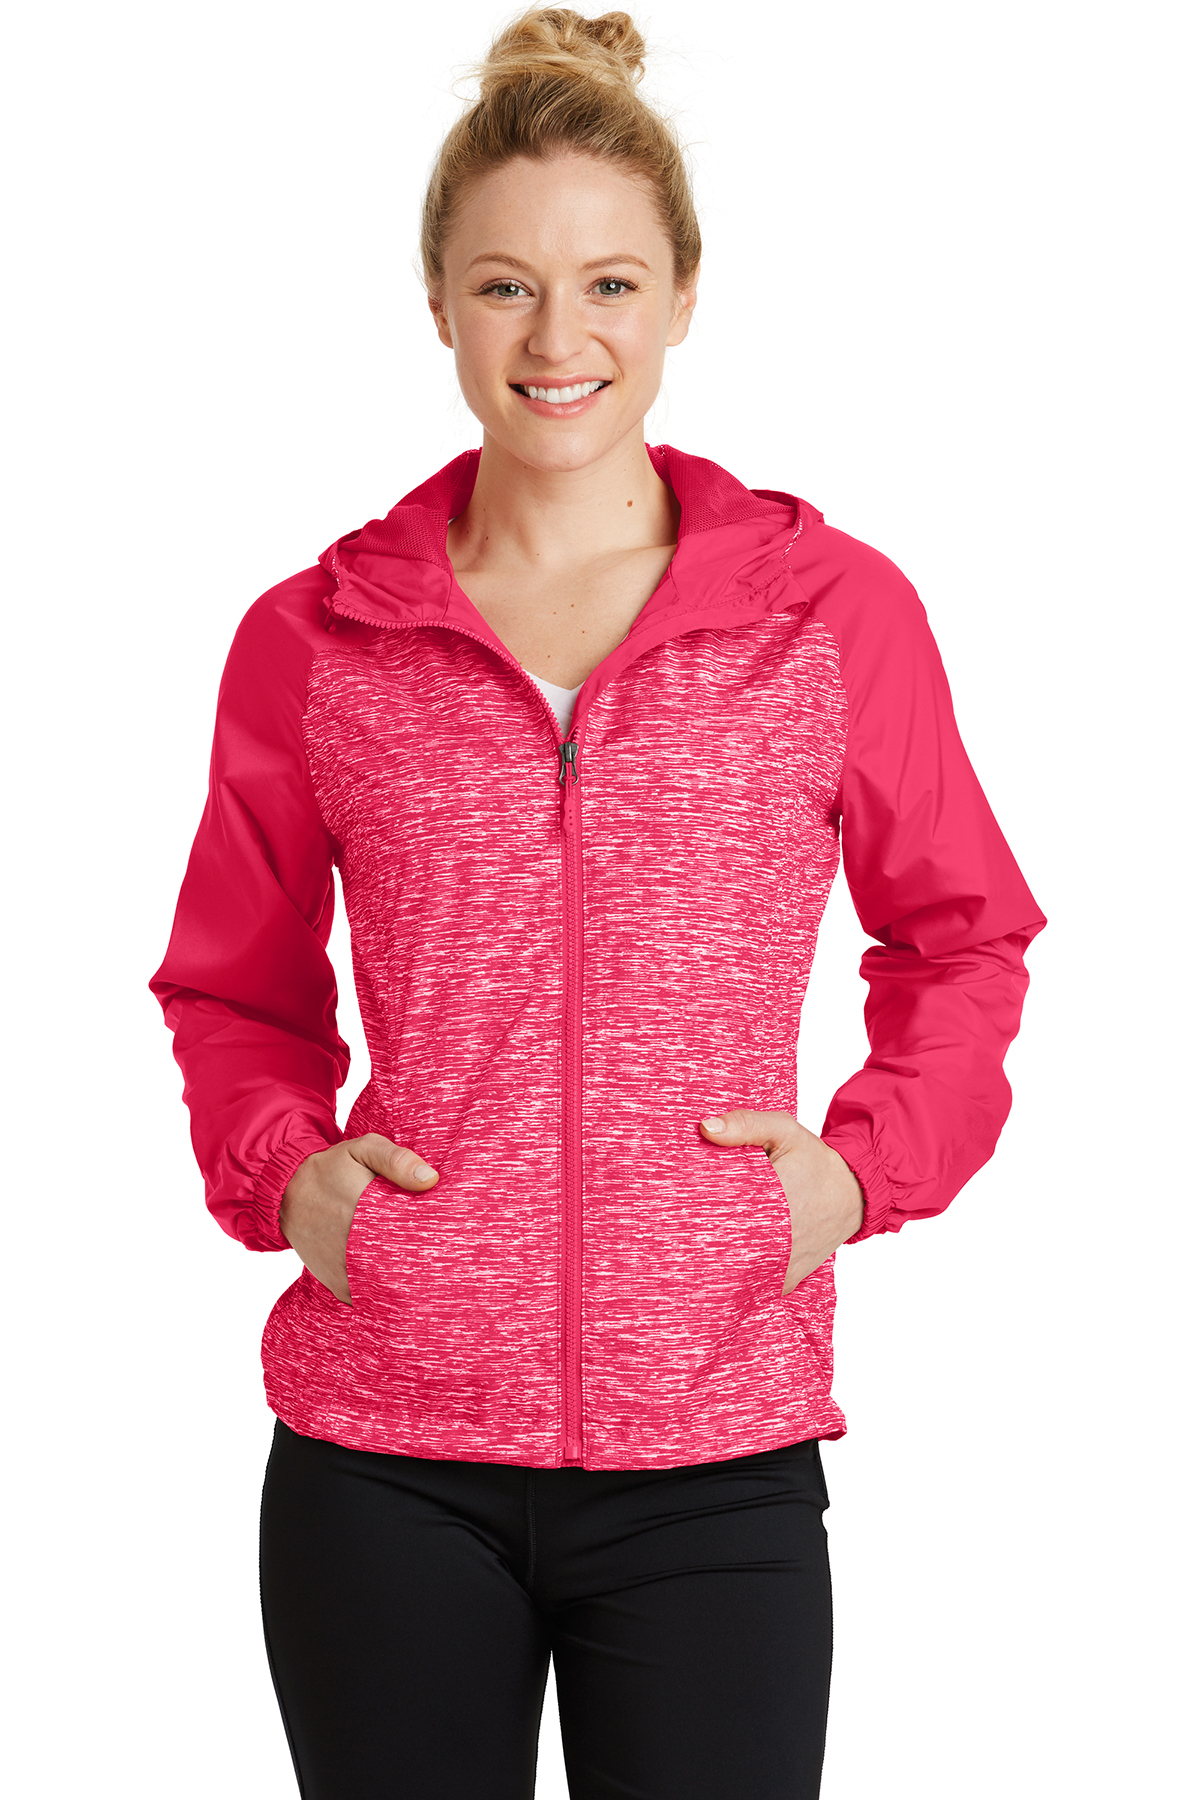 | Colorblock Product Heather Jacket Ladies Sport-Tek Wind Sport-Tek | Hooded Raglan